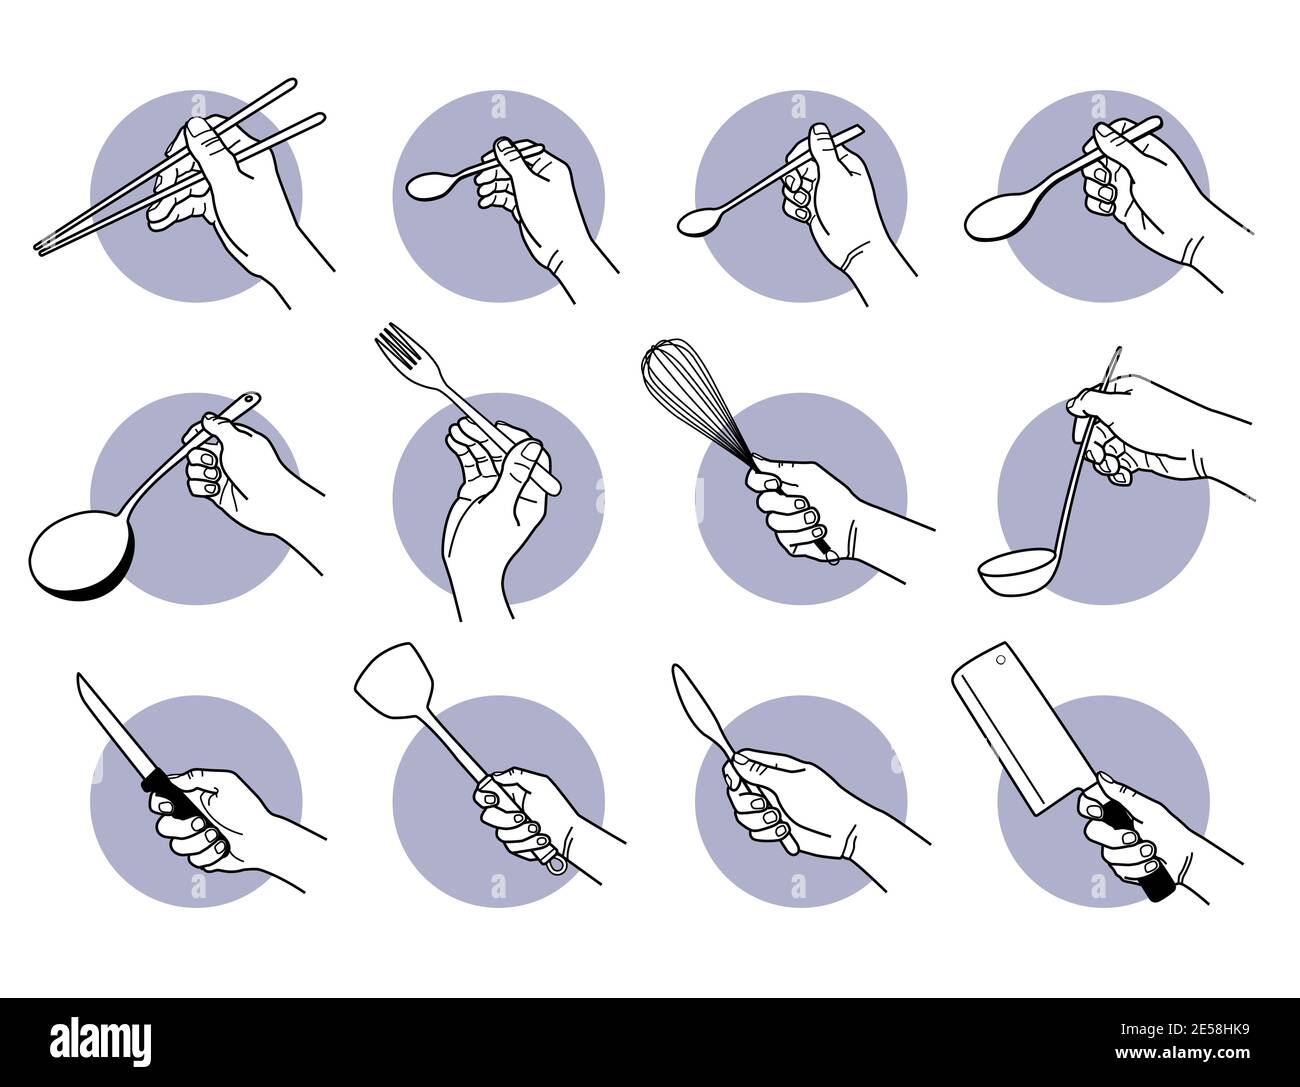 Tenir les ustensiles de cuisine et les outils de cuisson à la main. Illustrations vectorielles d'une main tenant des baguettes, une cuillère, une fourchette, un fouet, un couteau et une spatule. Illustration de Vecteur